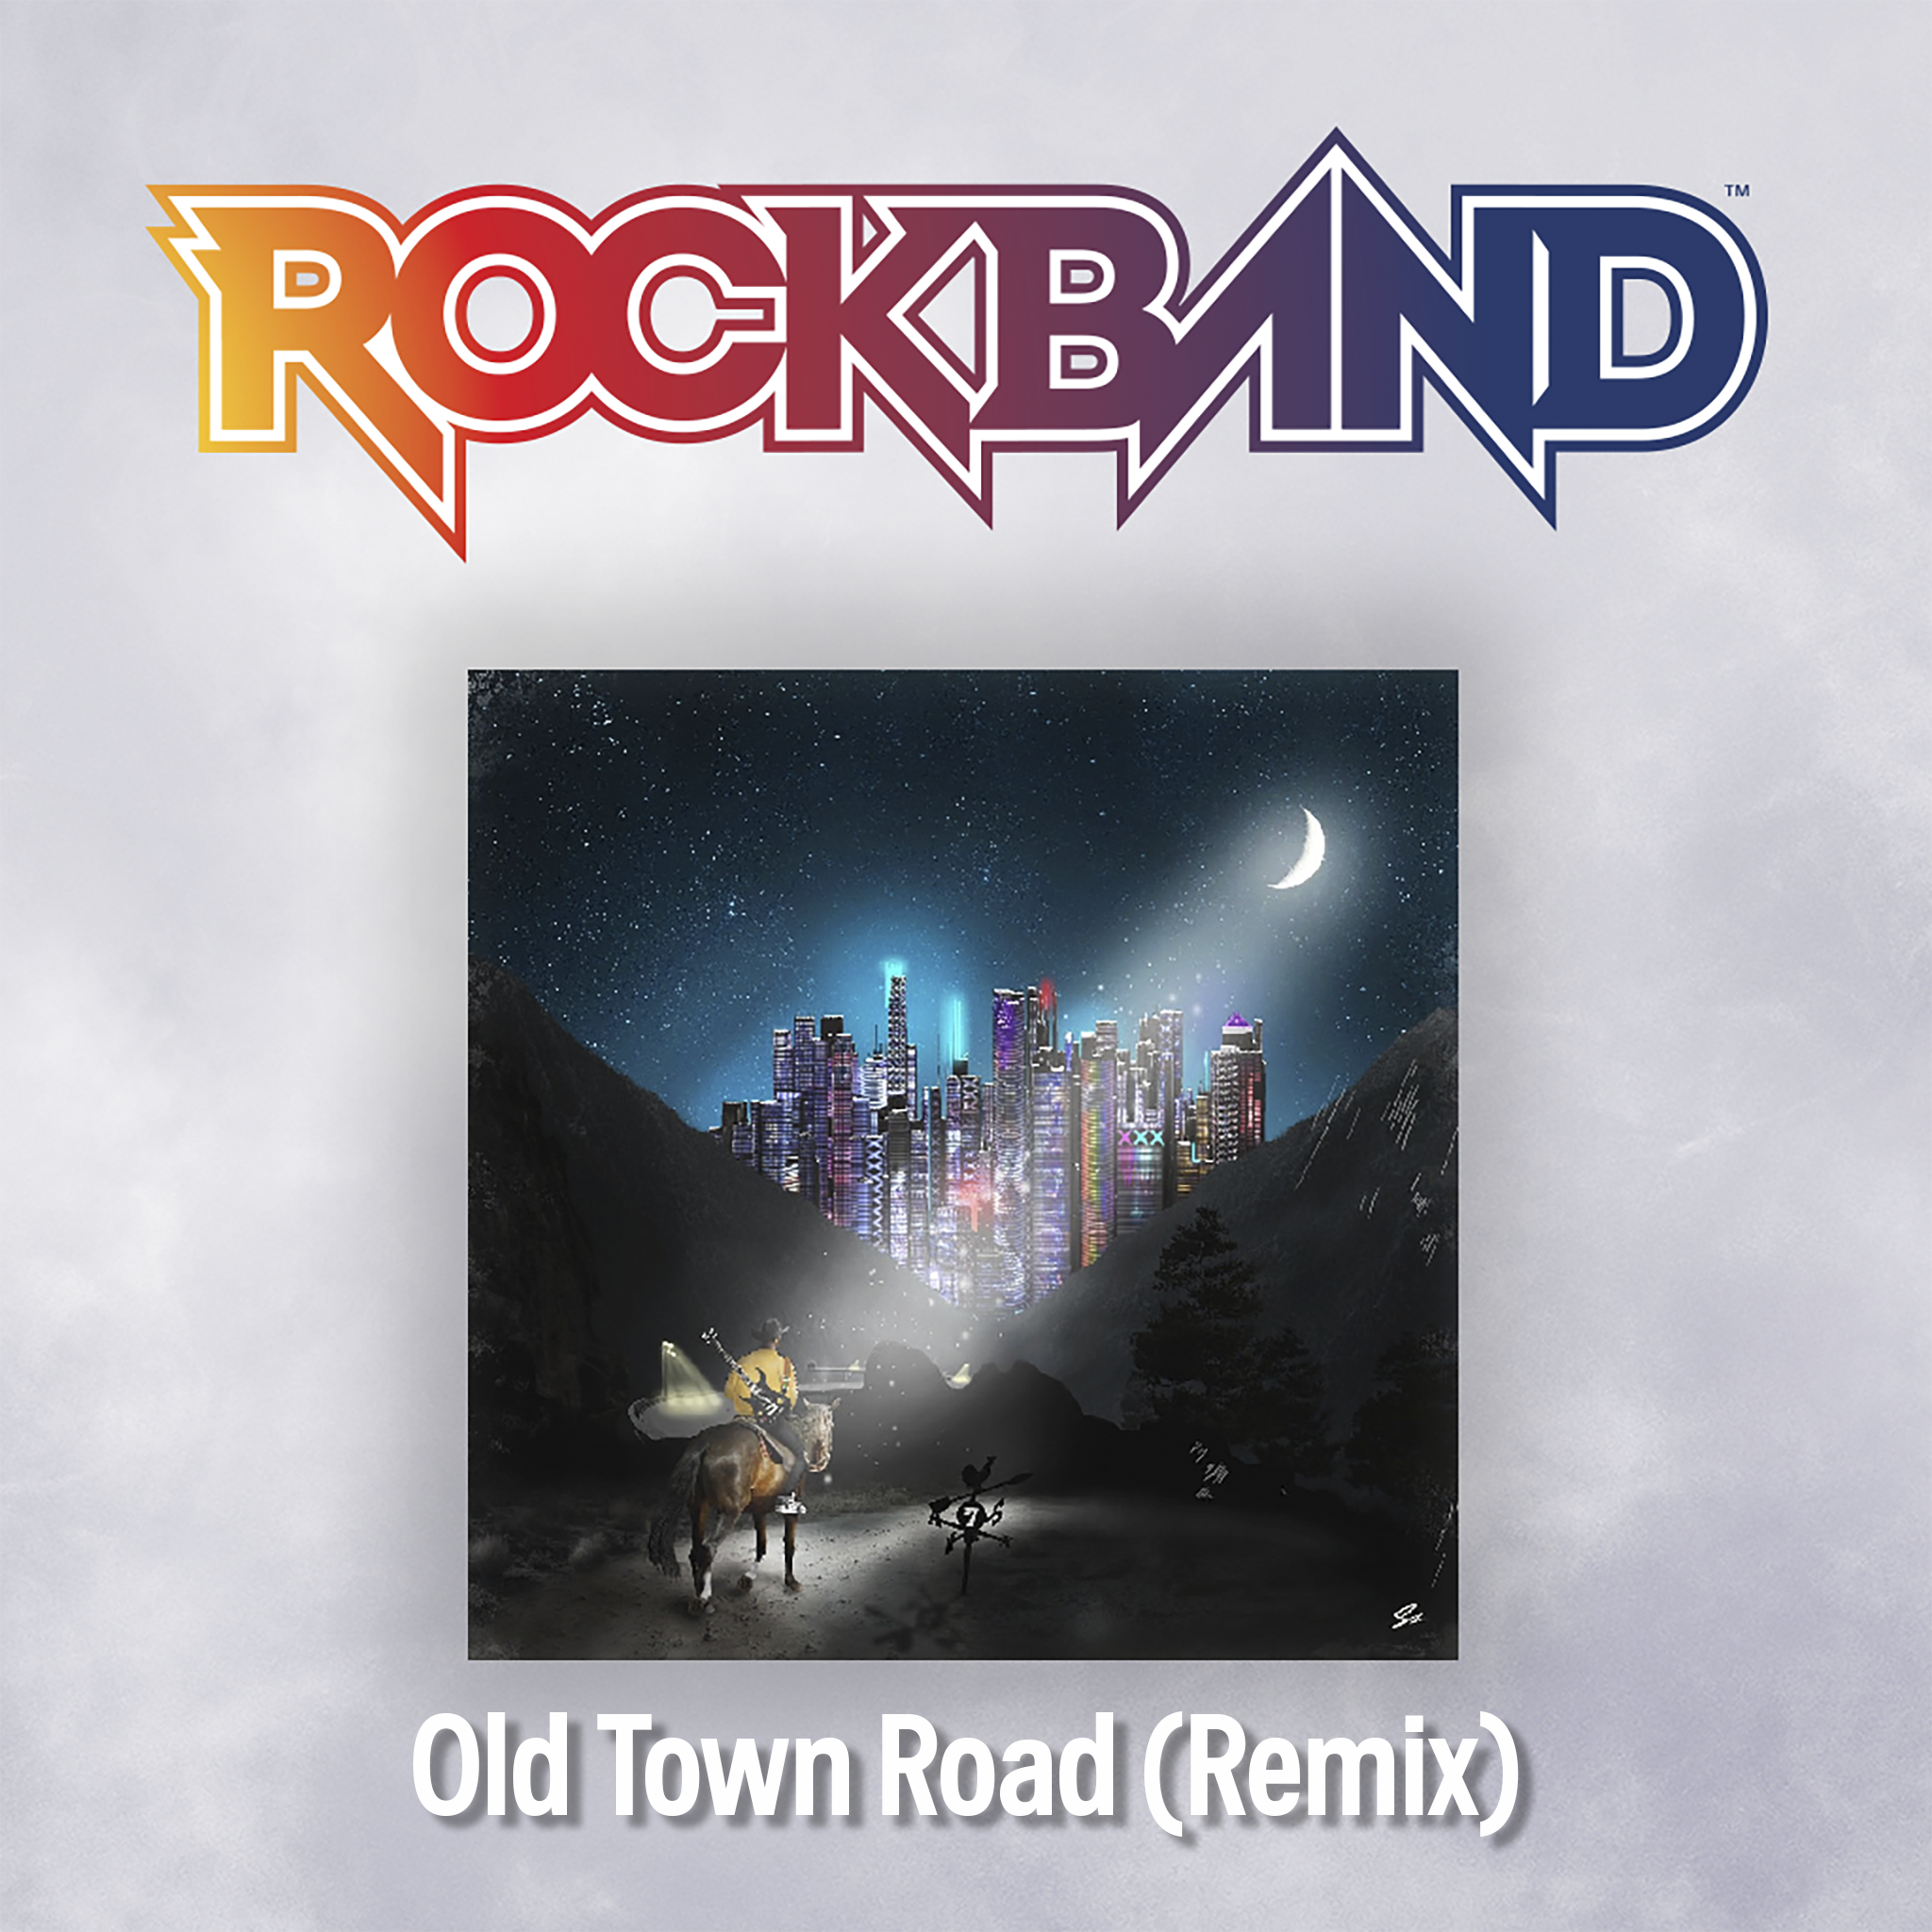 old town road remix lyrics